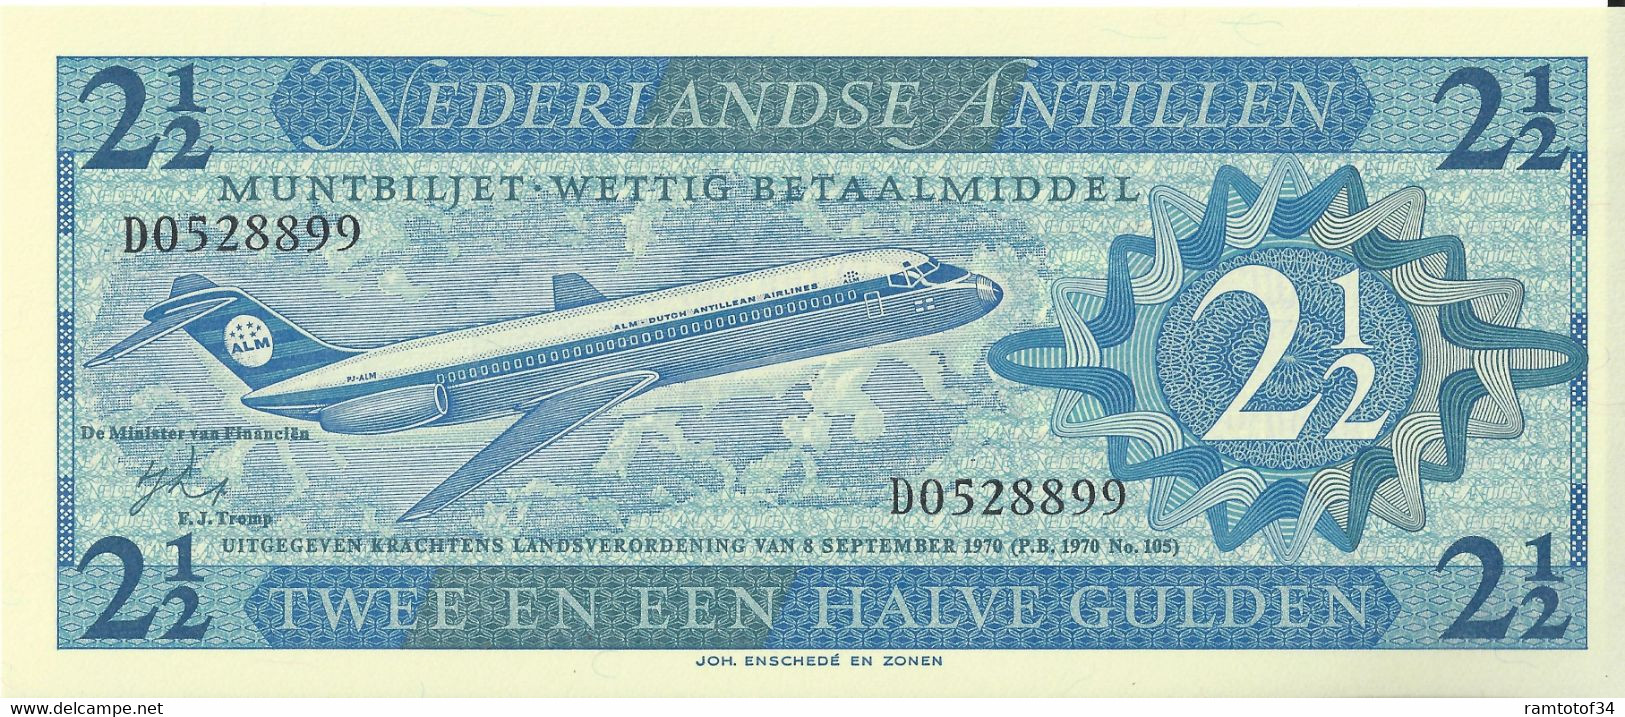 NEDERLANDLANDSE ANTILLEN - 2.5 Gulden 1970 UNC - Niederländische Antillen (...-1986)